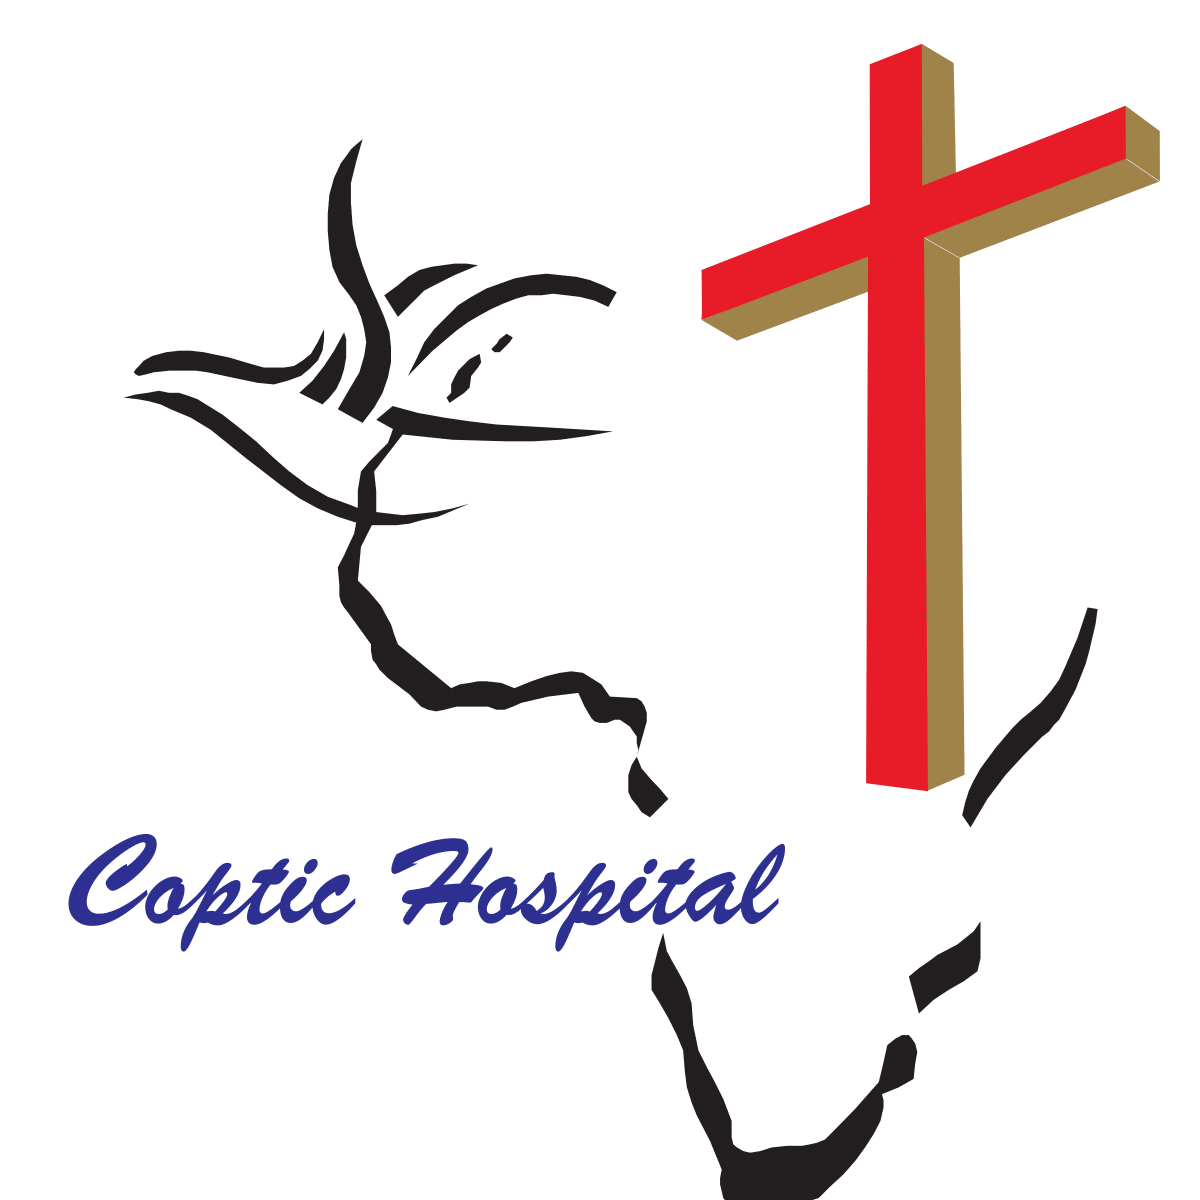 Coptic Hospital